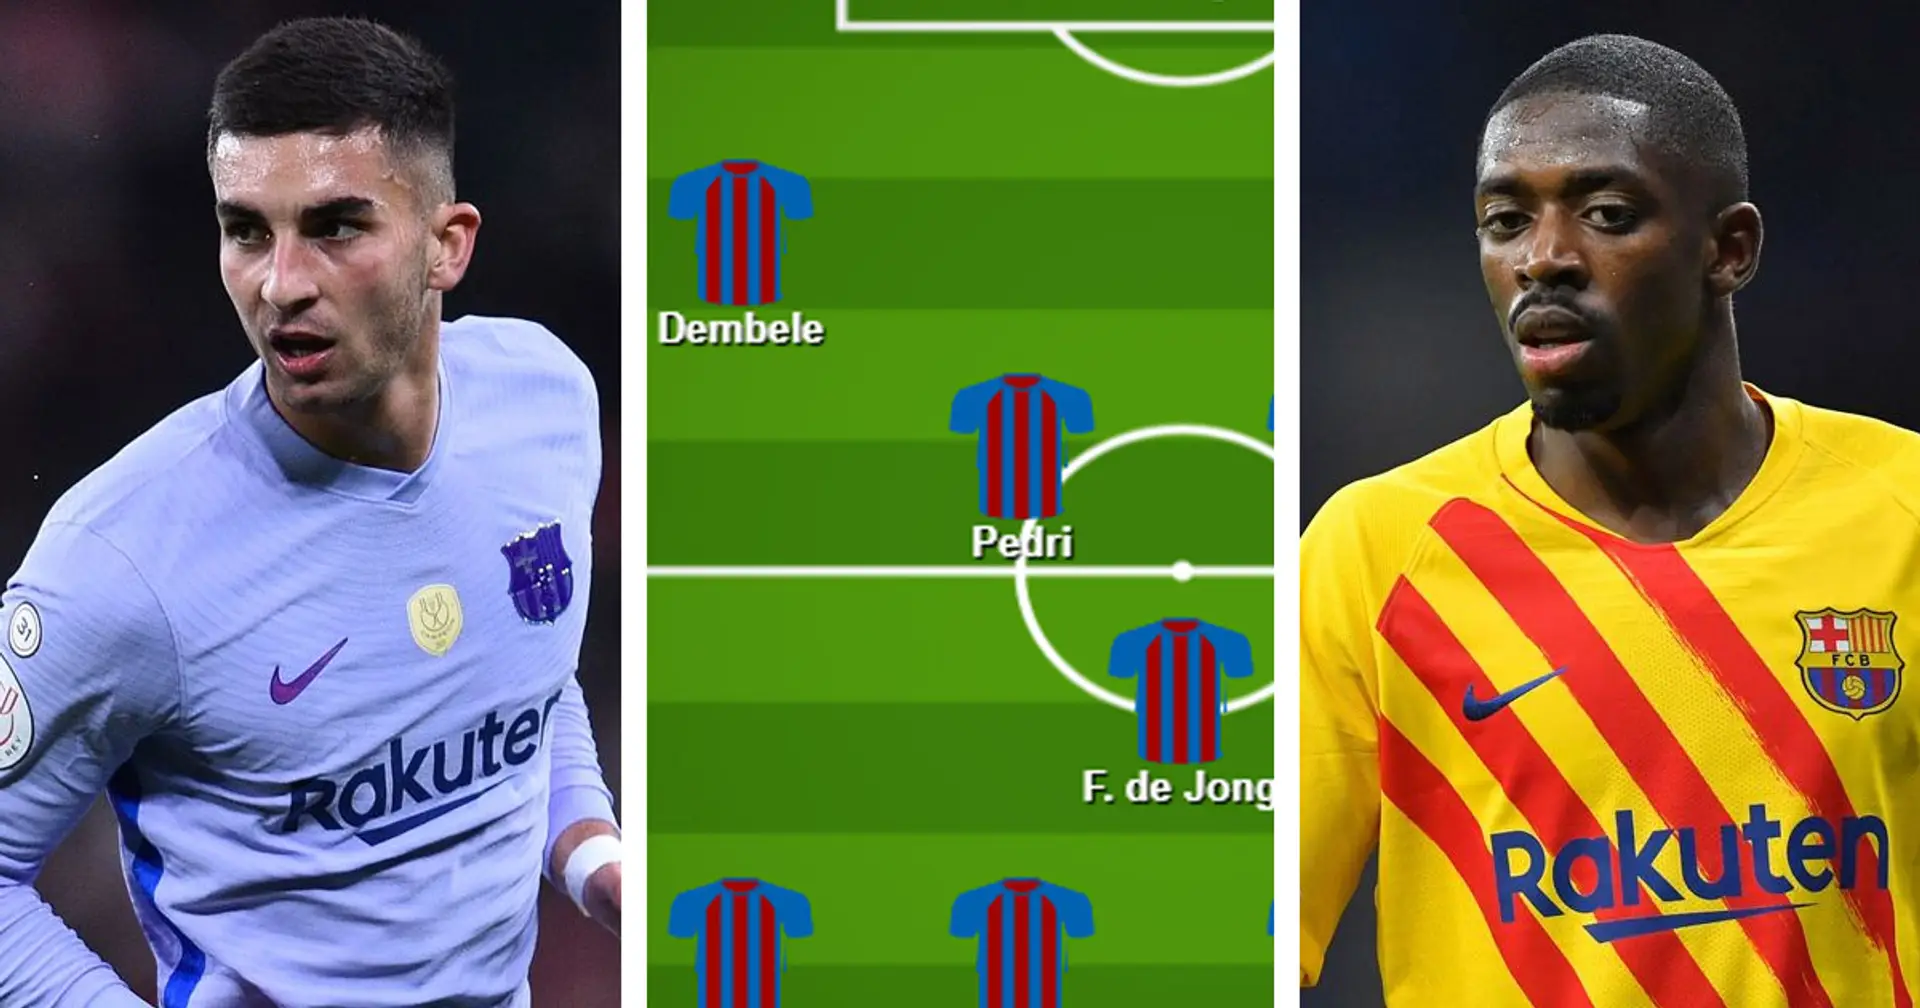 ¿Enviar a Ferran Torres a la banca por Dembélé? Elige el XI favorito para el partido vs Valencia entre 3 opciones